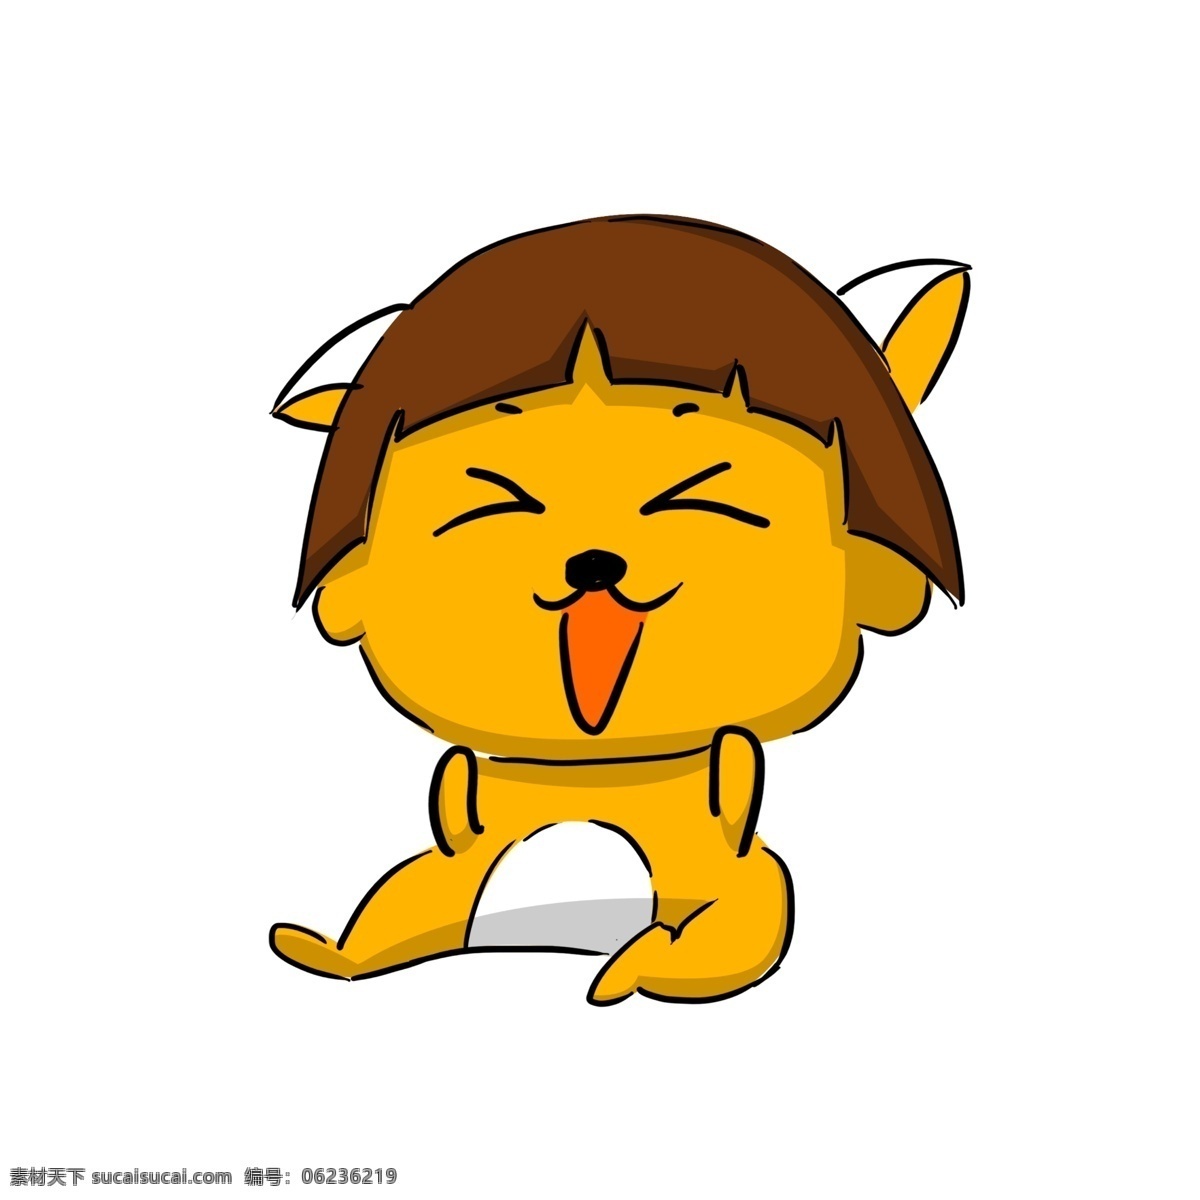 开心 黄色 海狸 插画 开心的海狸 黄色海狸 卡通小动物 大笑表情 开心的小动物 海狸装饰插画